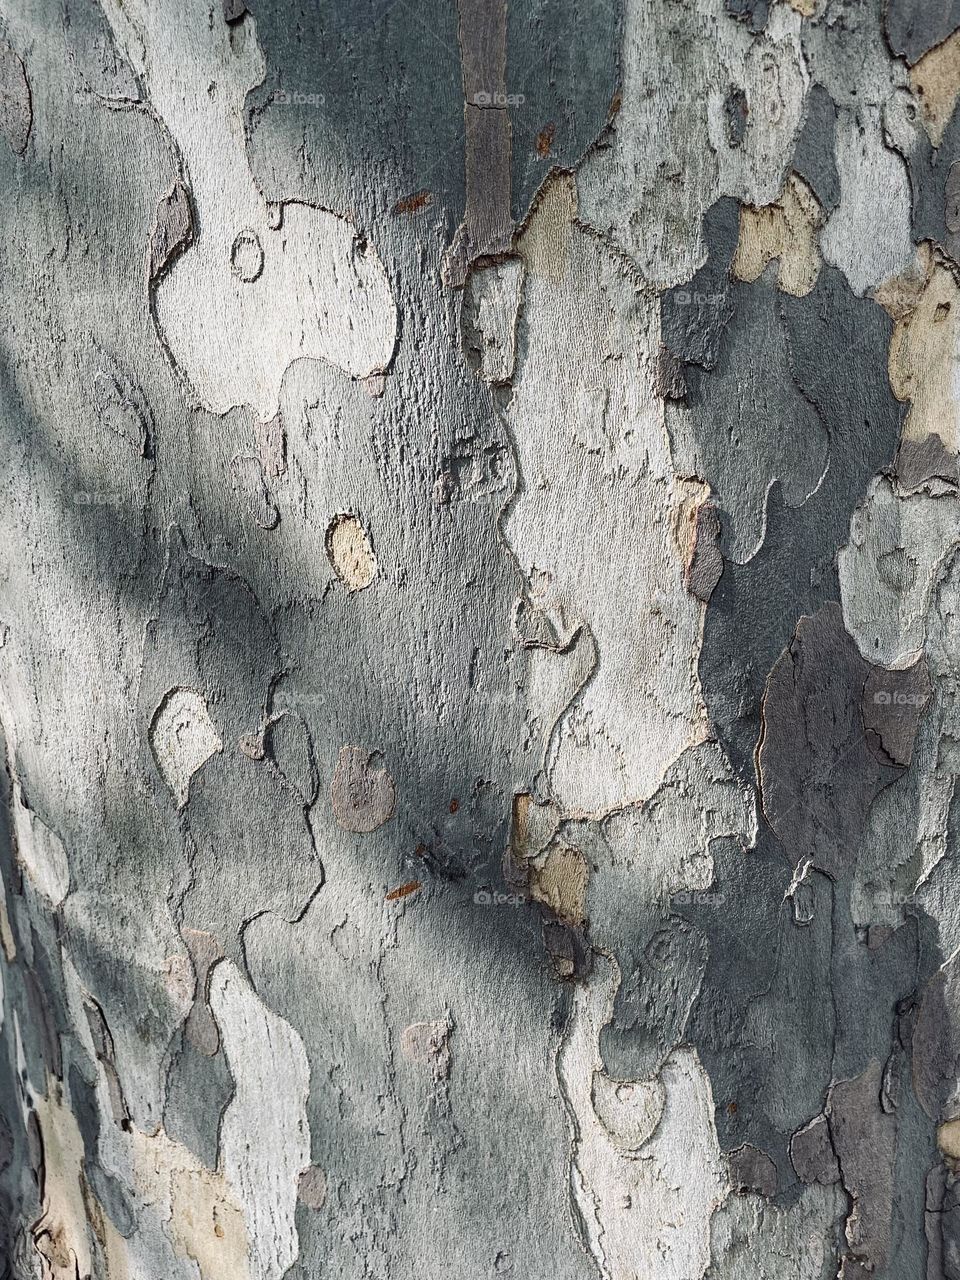 Closeup view of grey peeling tree bark 